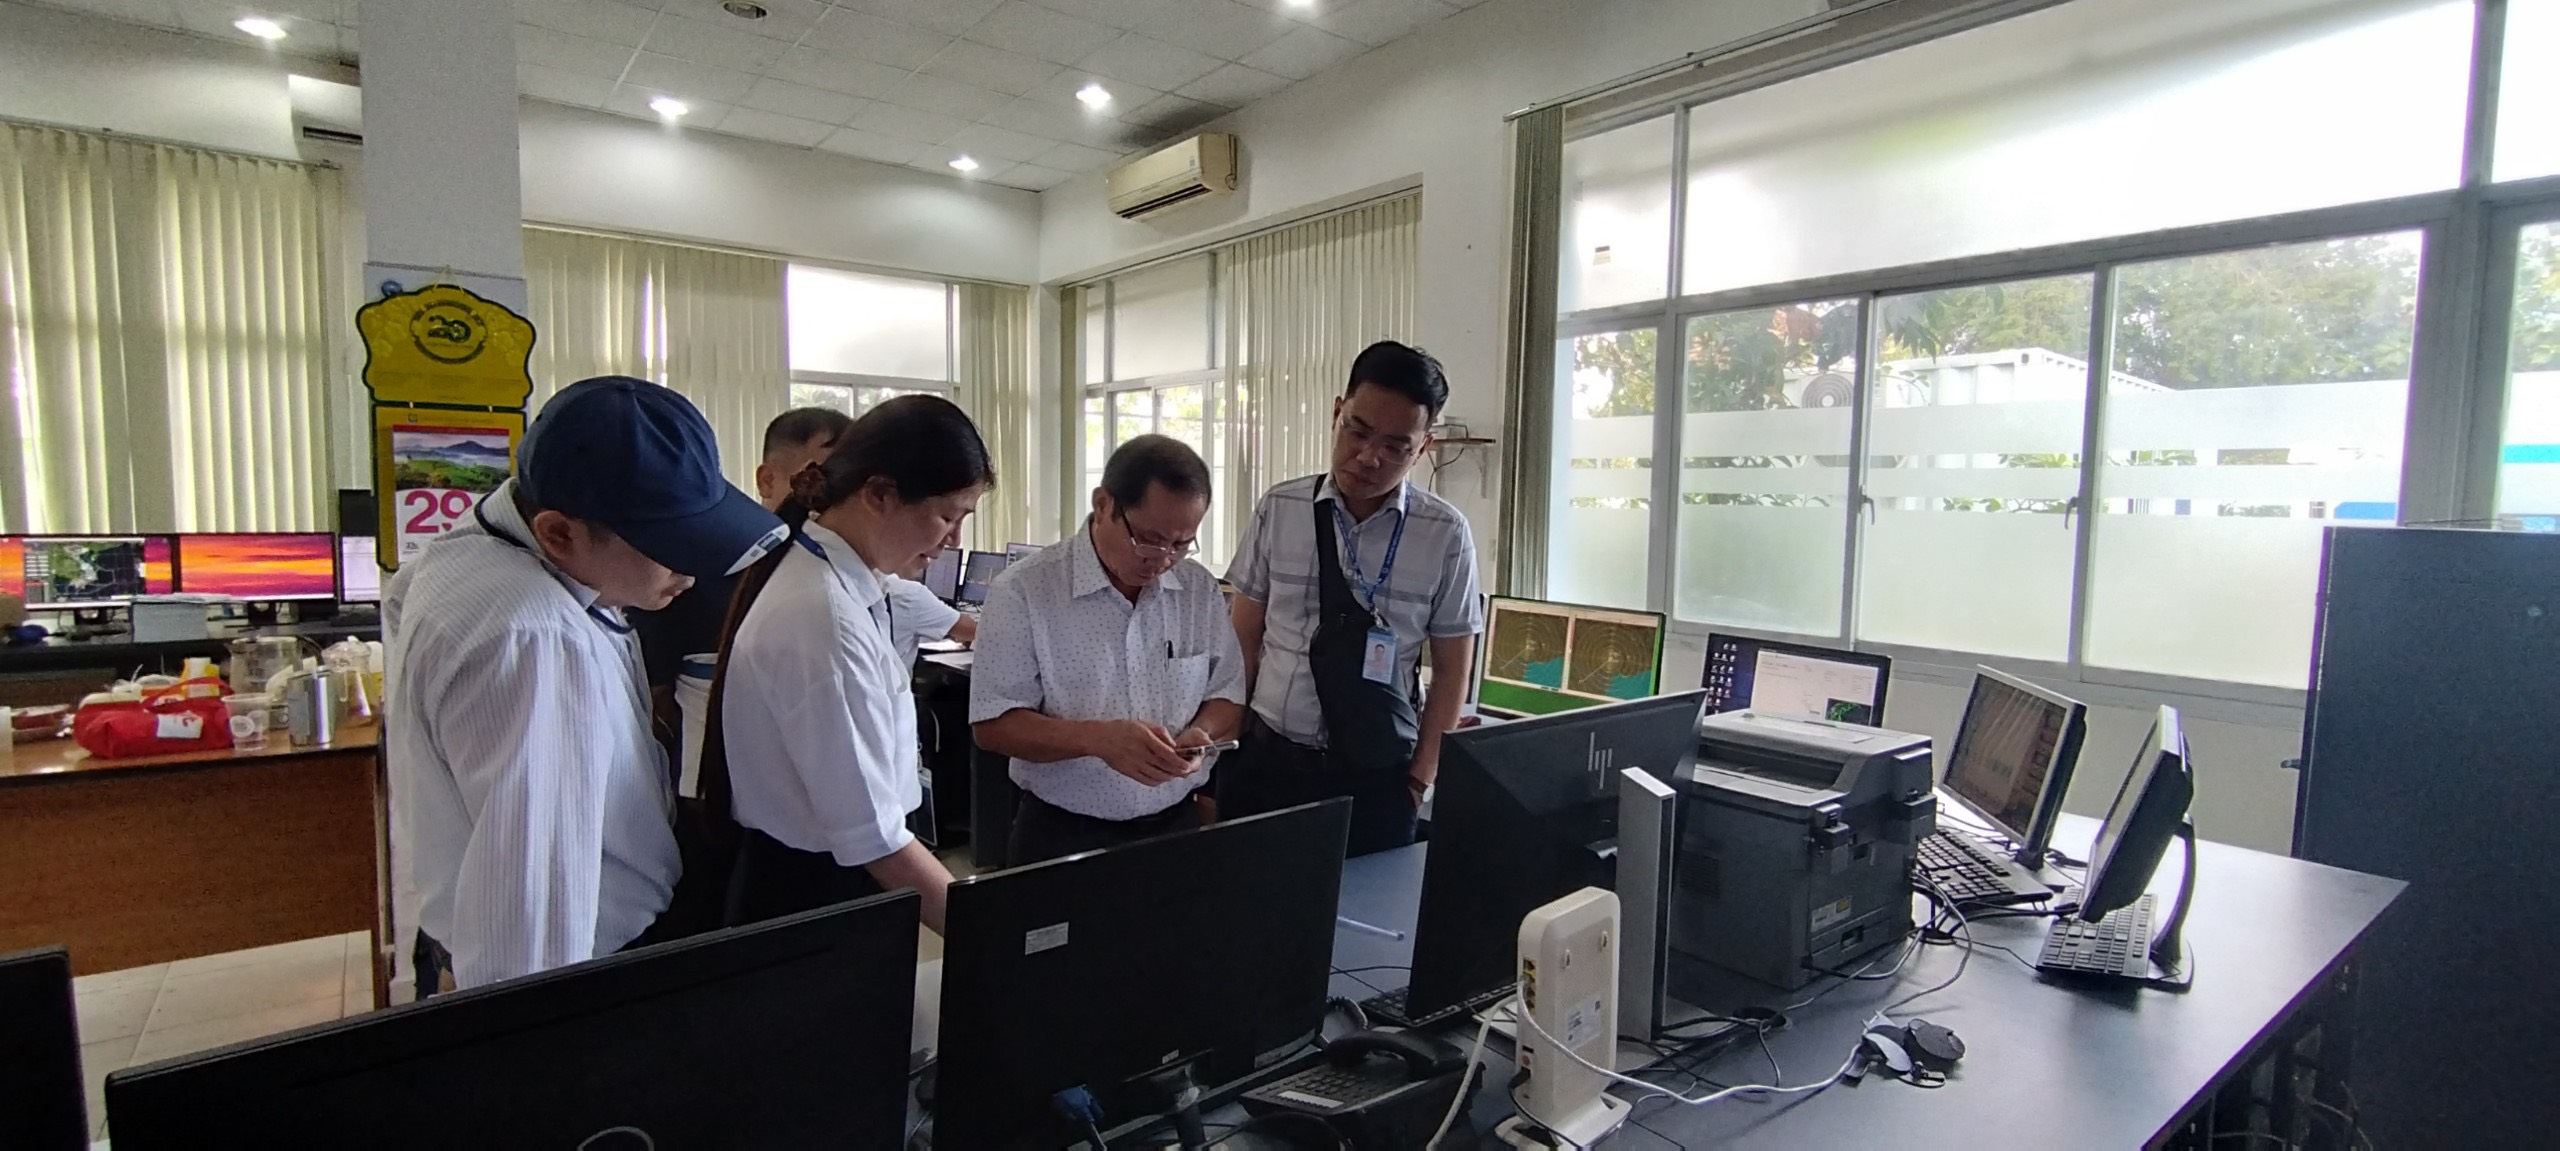 Cục Hàng không Việt Nam kiểm tra thực tế cơ sở Cung cấp dịch vụ Khí tượng tại Trung tâm Khí tượng hàng không Tân Sơn Nhất